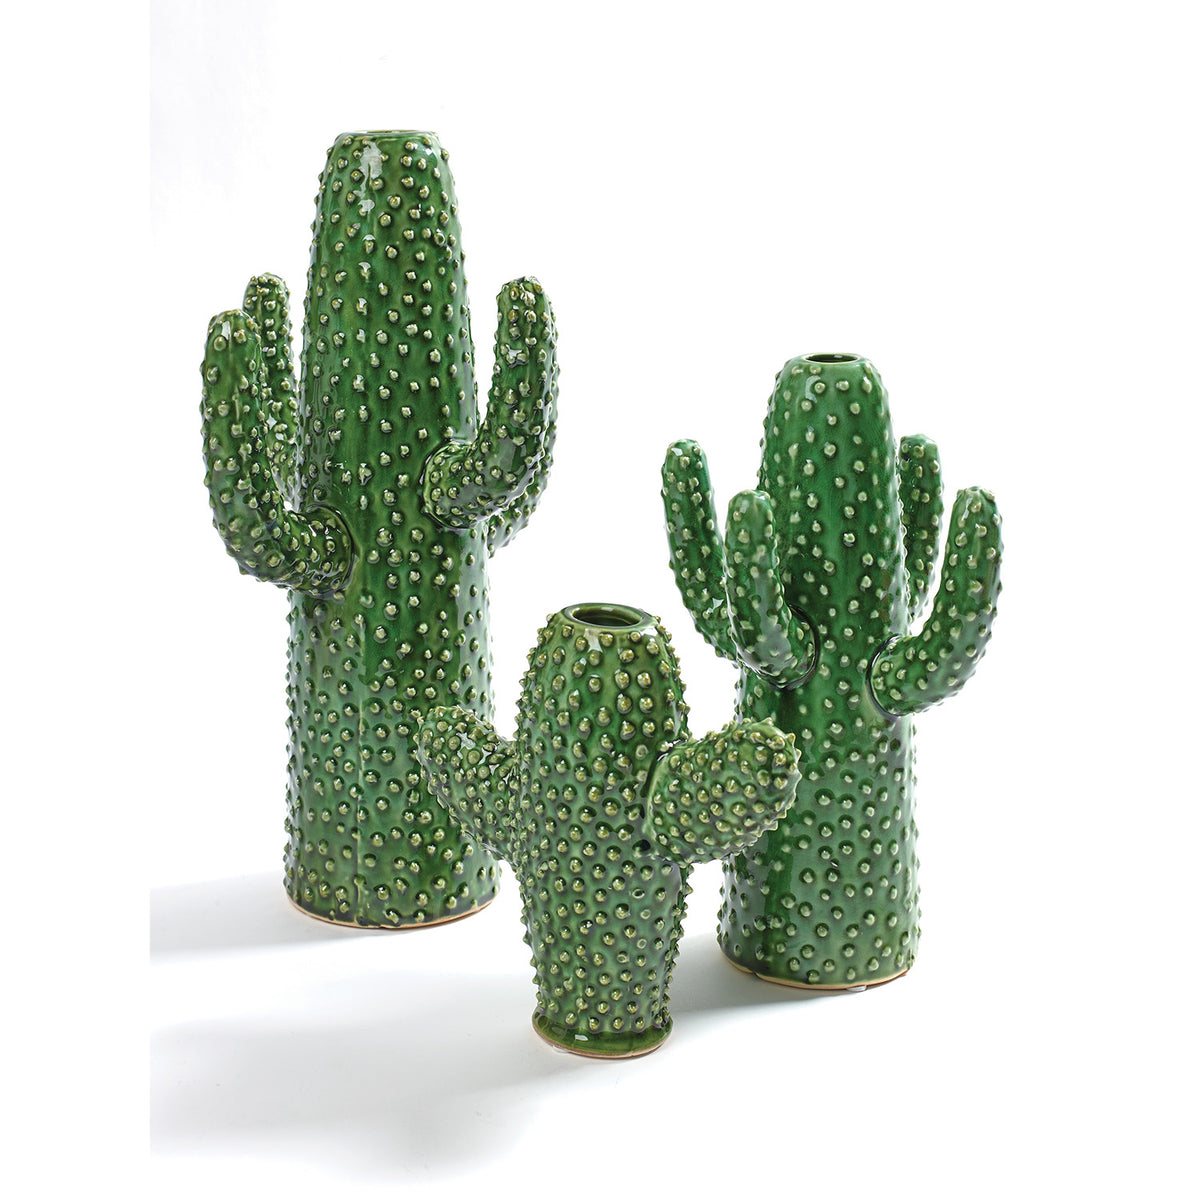 Cactus Vase Extra Large